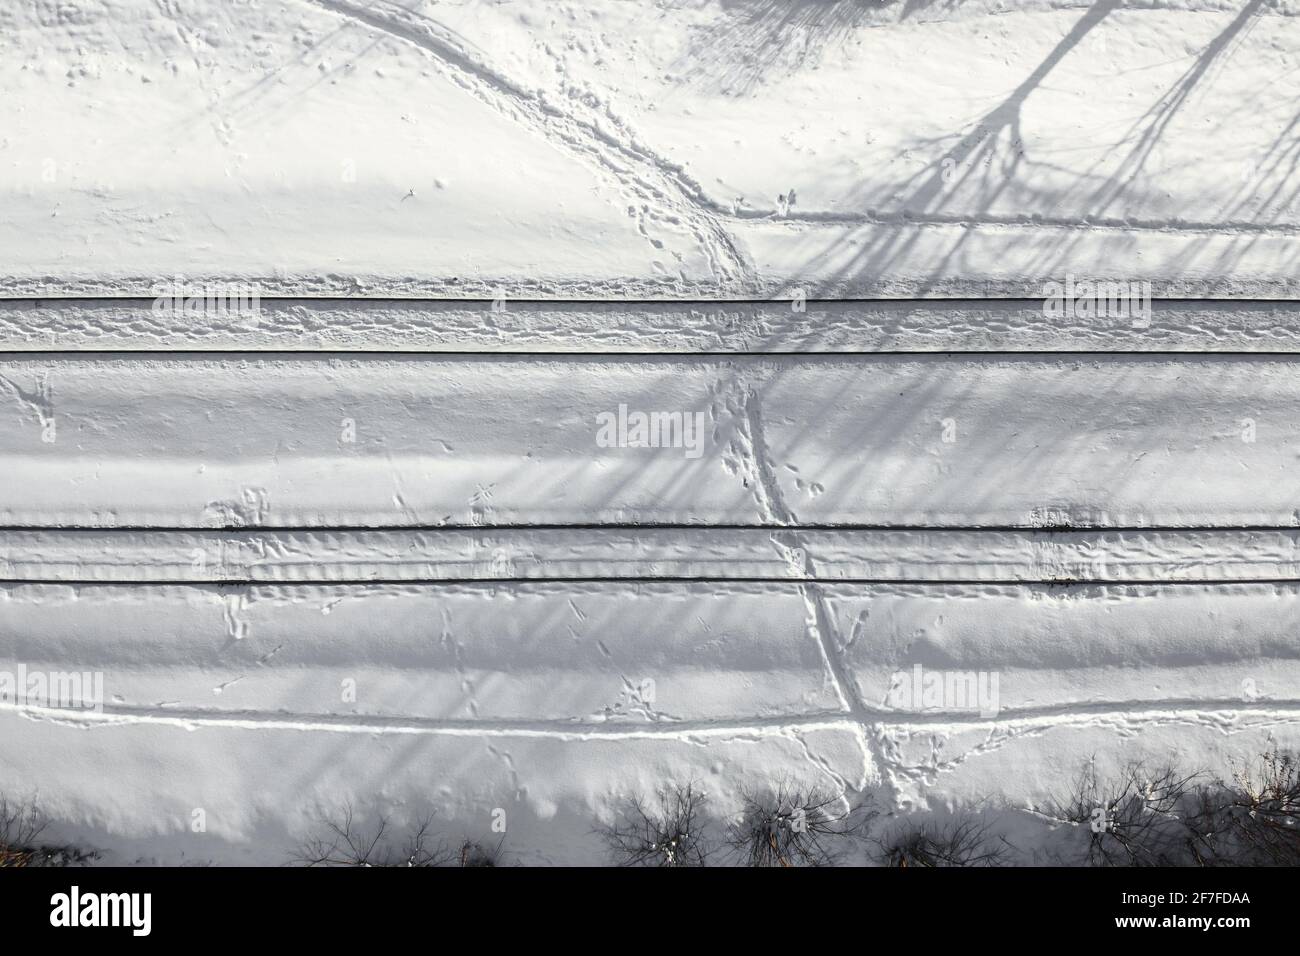 Luftaufnahme einer zweigleisigen Eisenbahn nach starkem Schneefall. Winterbahn mit weißem Schnee, Draufsicht. Verkehrsinfrastruktur, Bahnstrecke, verschneite l Stockfoto